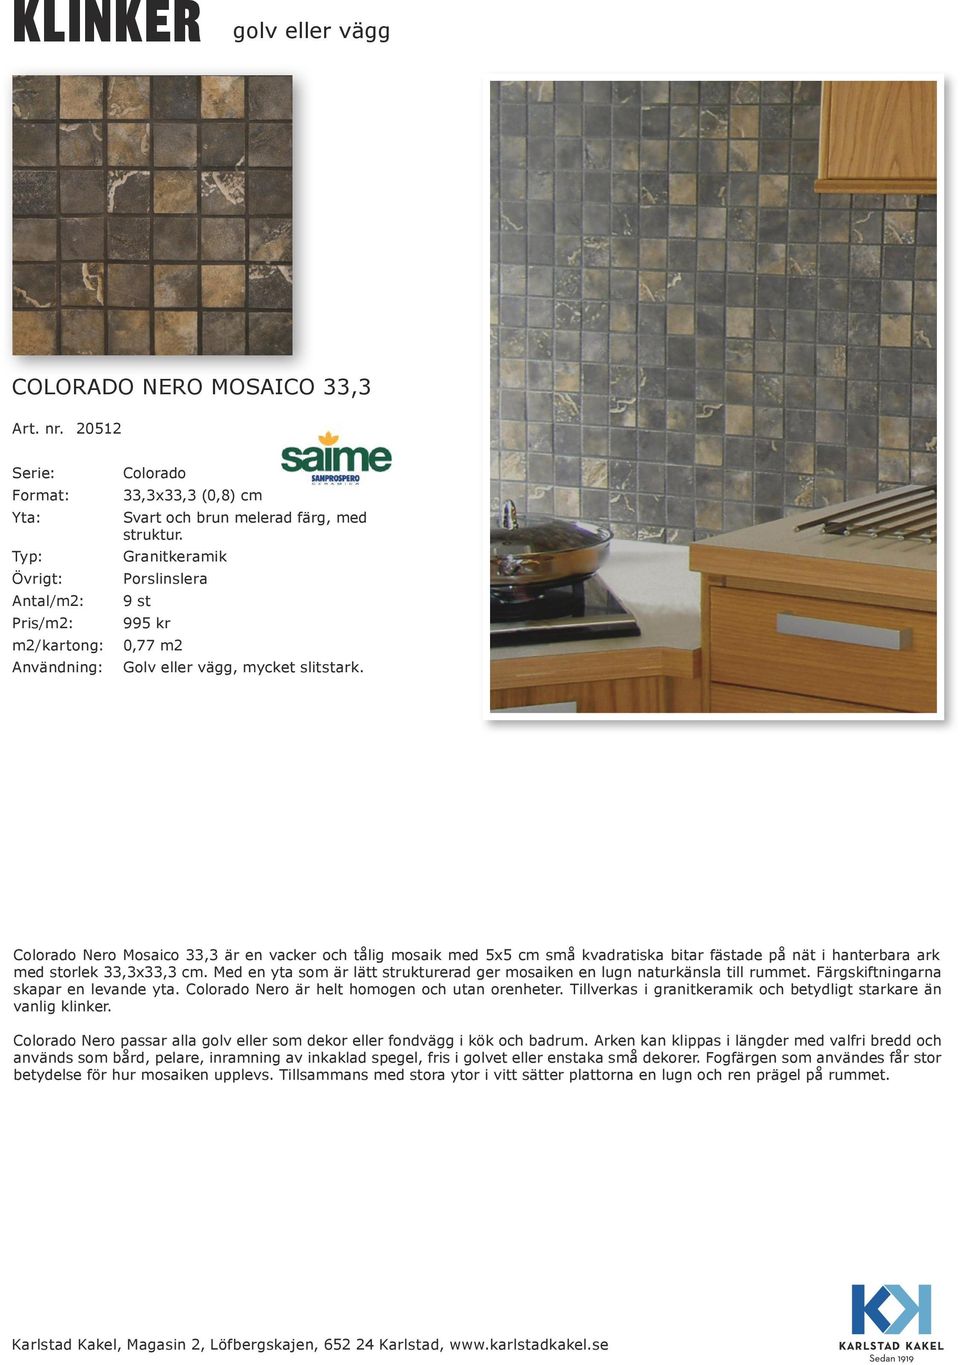 Med en yta som är lätt strukturerad ger mosaiken en lugn naturkänsla till rummet. Färgskiftningarna skapar en levande yta. Colorado Nero är helt homogen och utan orenheter.